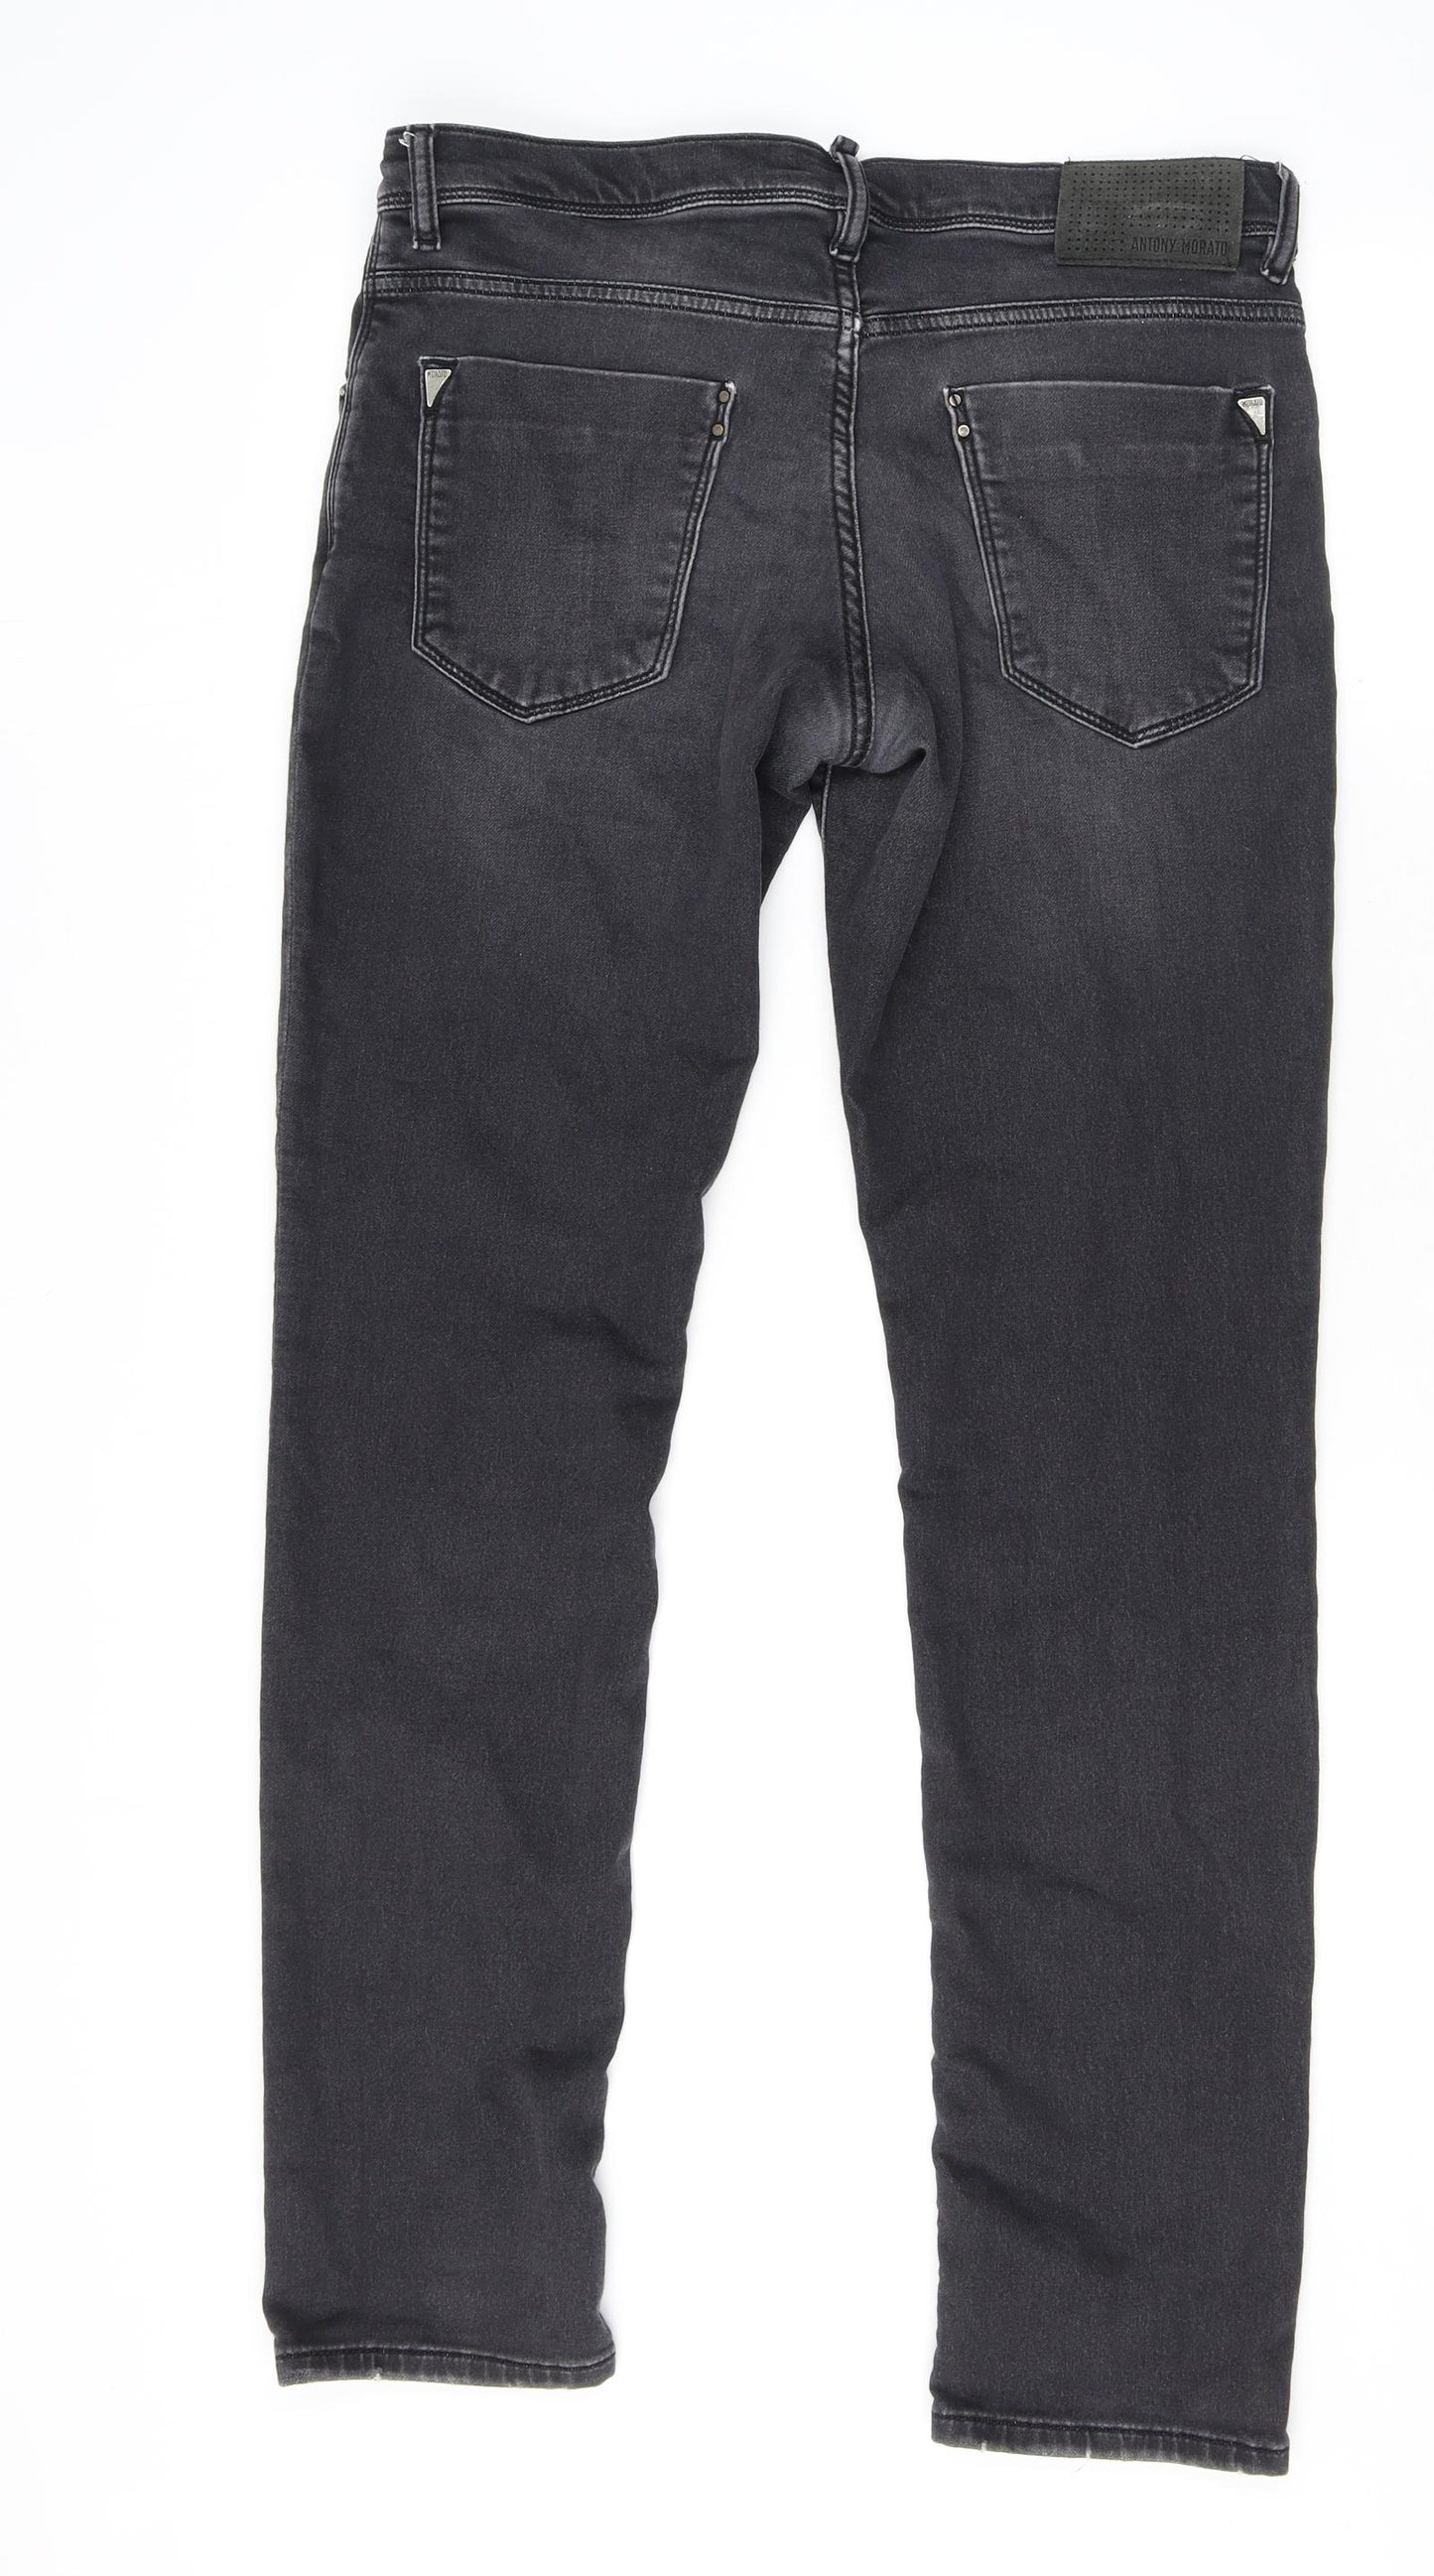 Antony Morato Mens Black Cotton Skinny Jeans Size 34 in L31 in Extra-Slim Zip